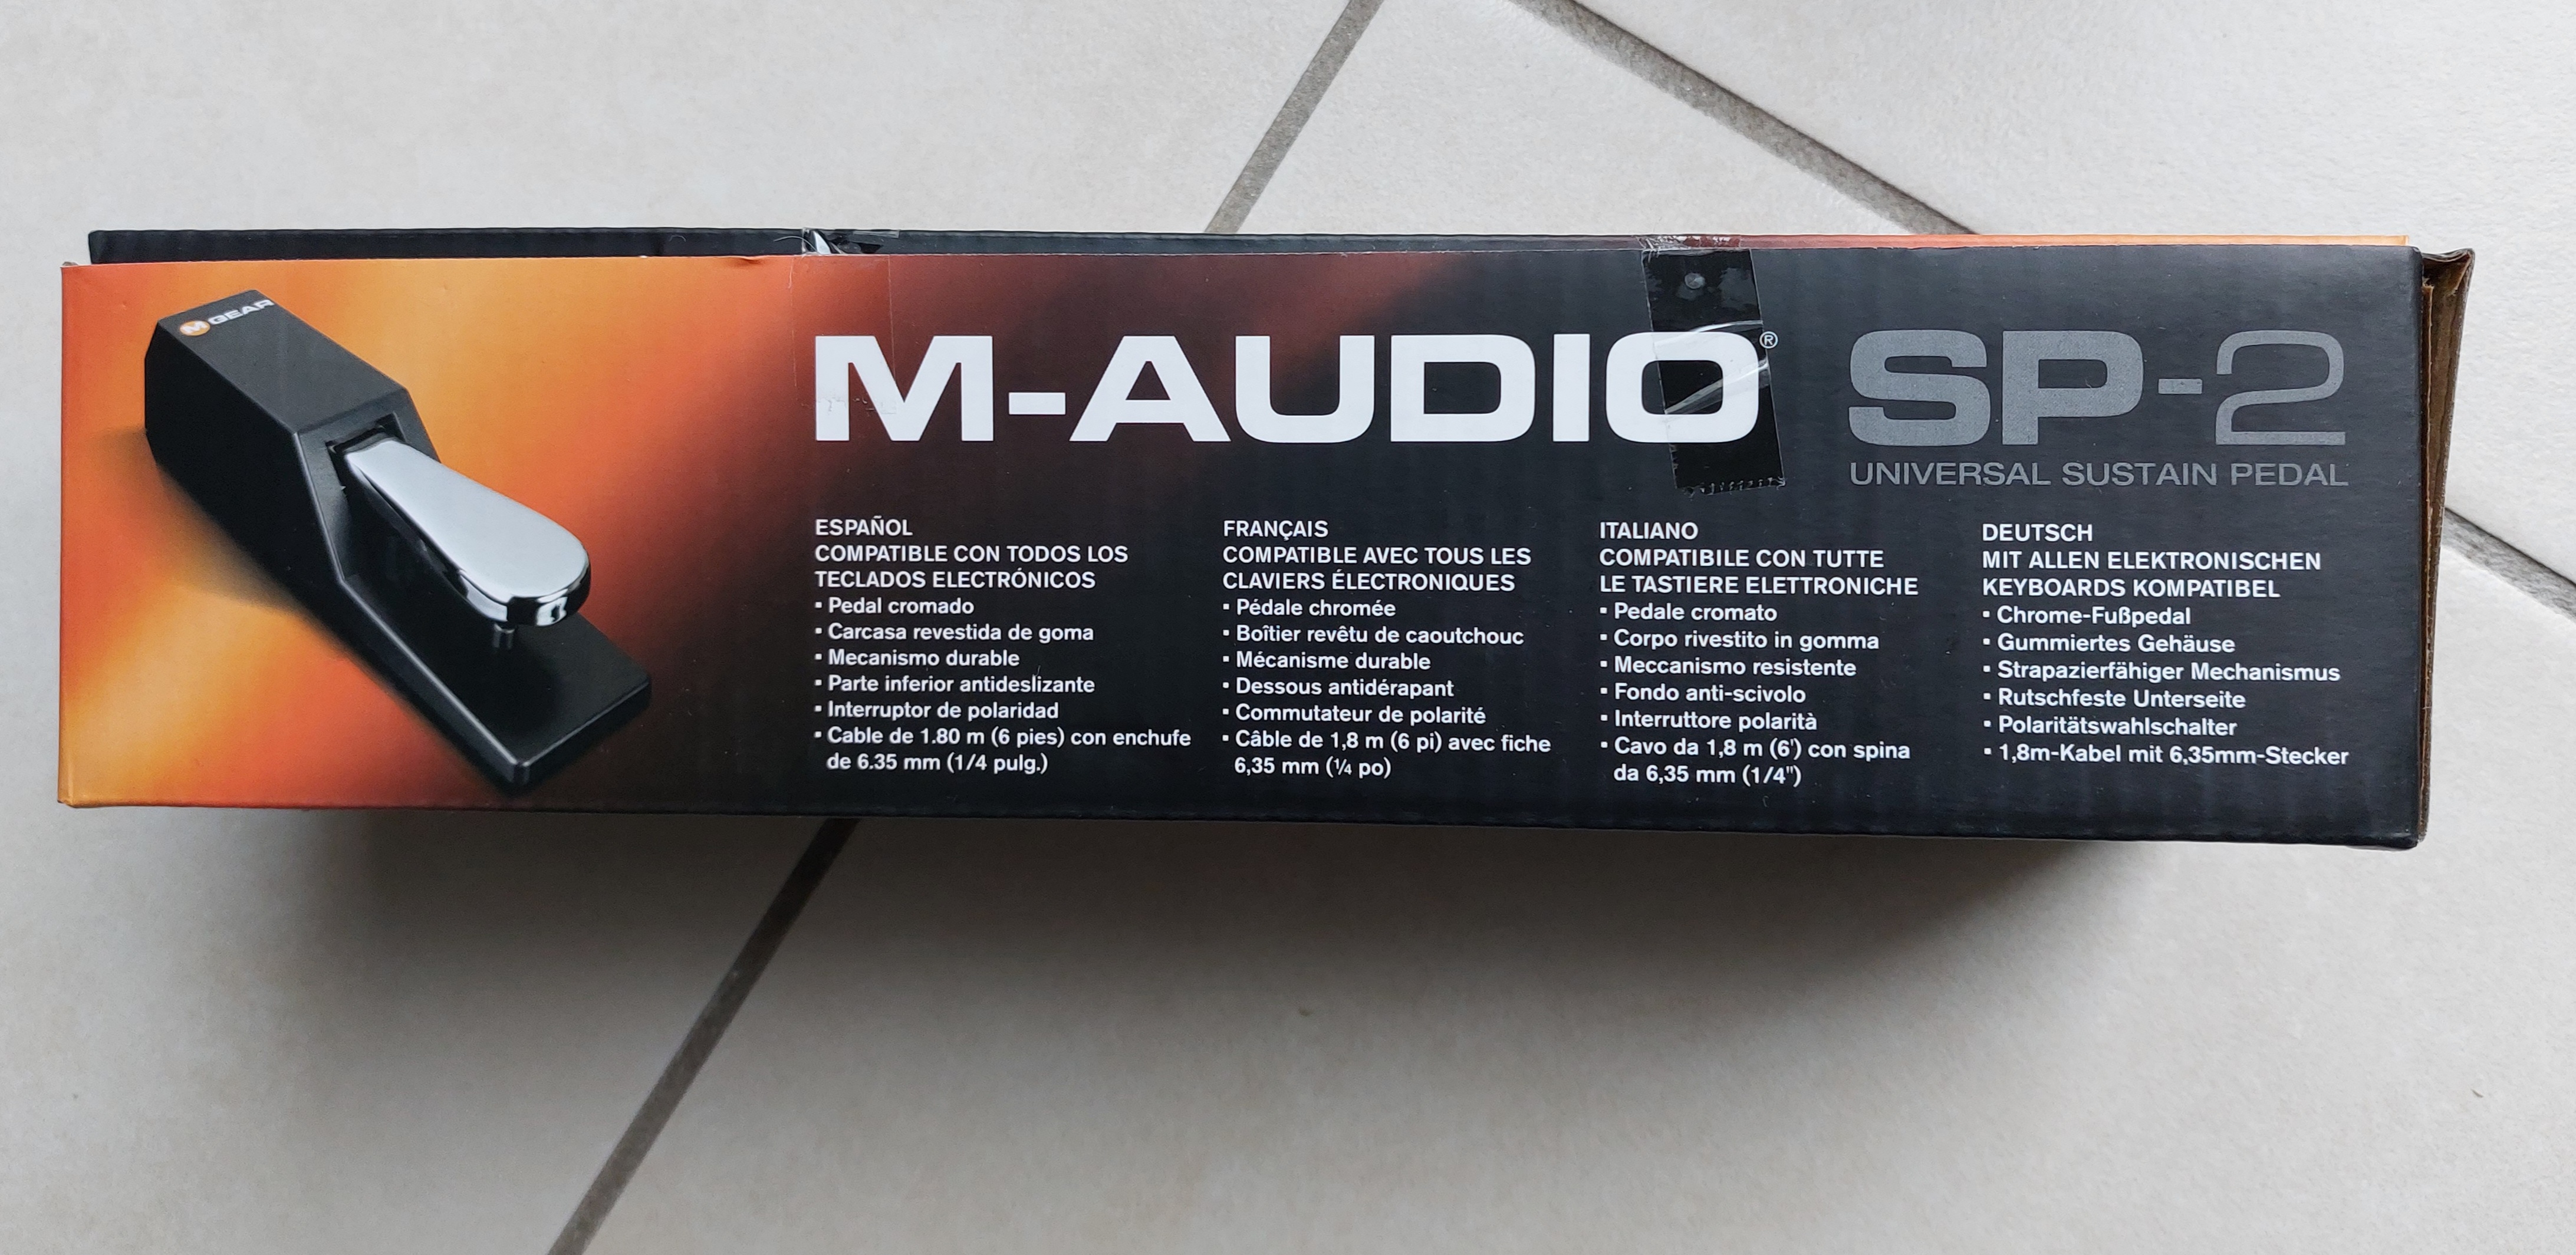 Sp-2 - M-Audio Sp-2 - Audiofanzine